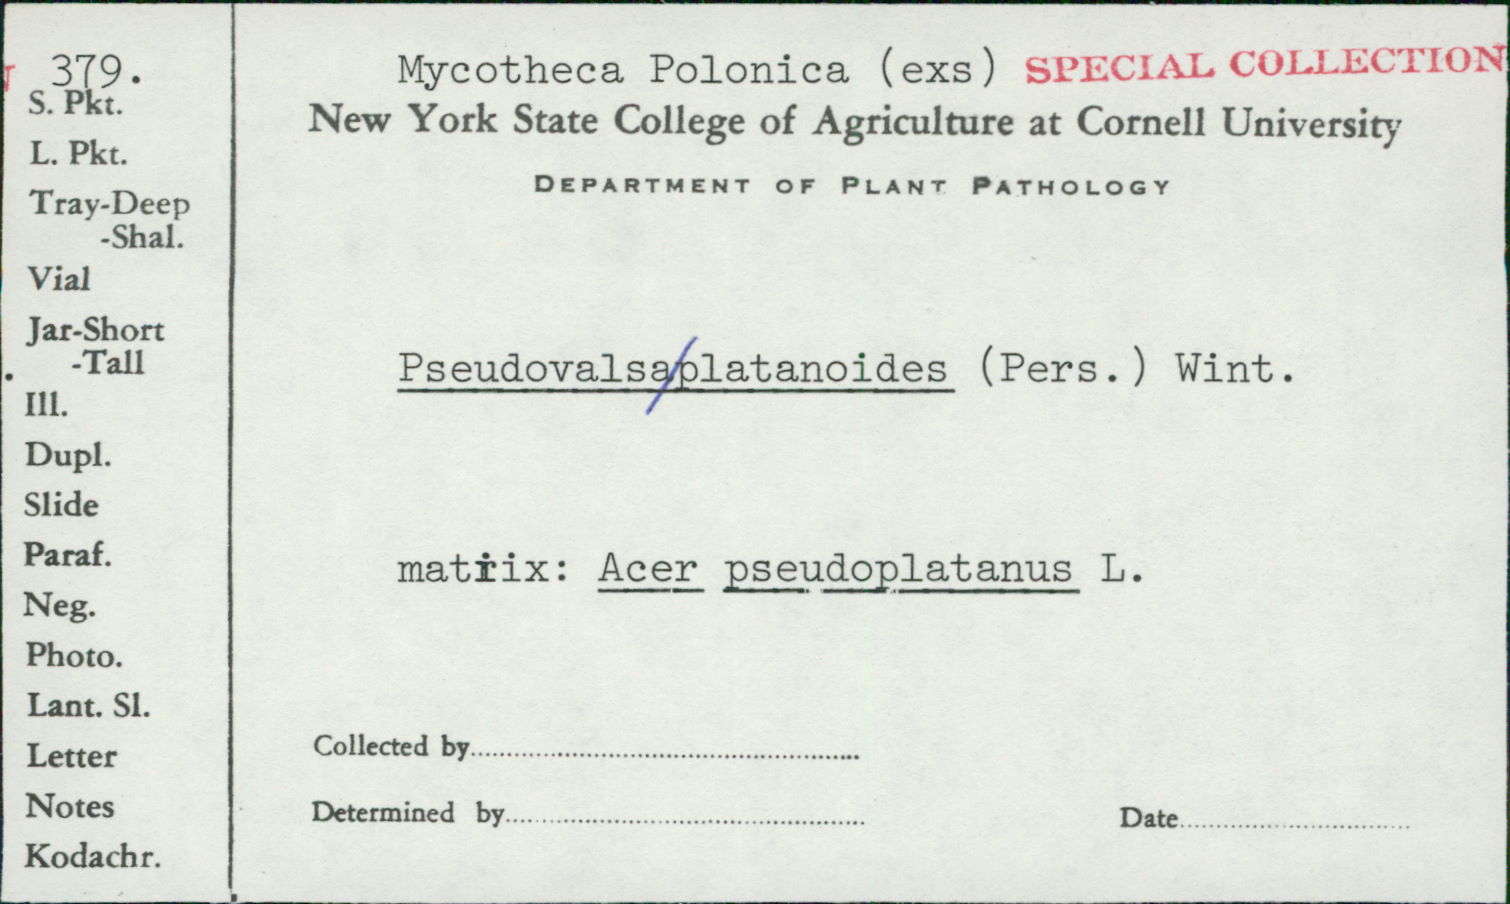 Prosthecium platanoidis image